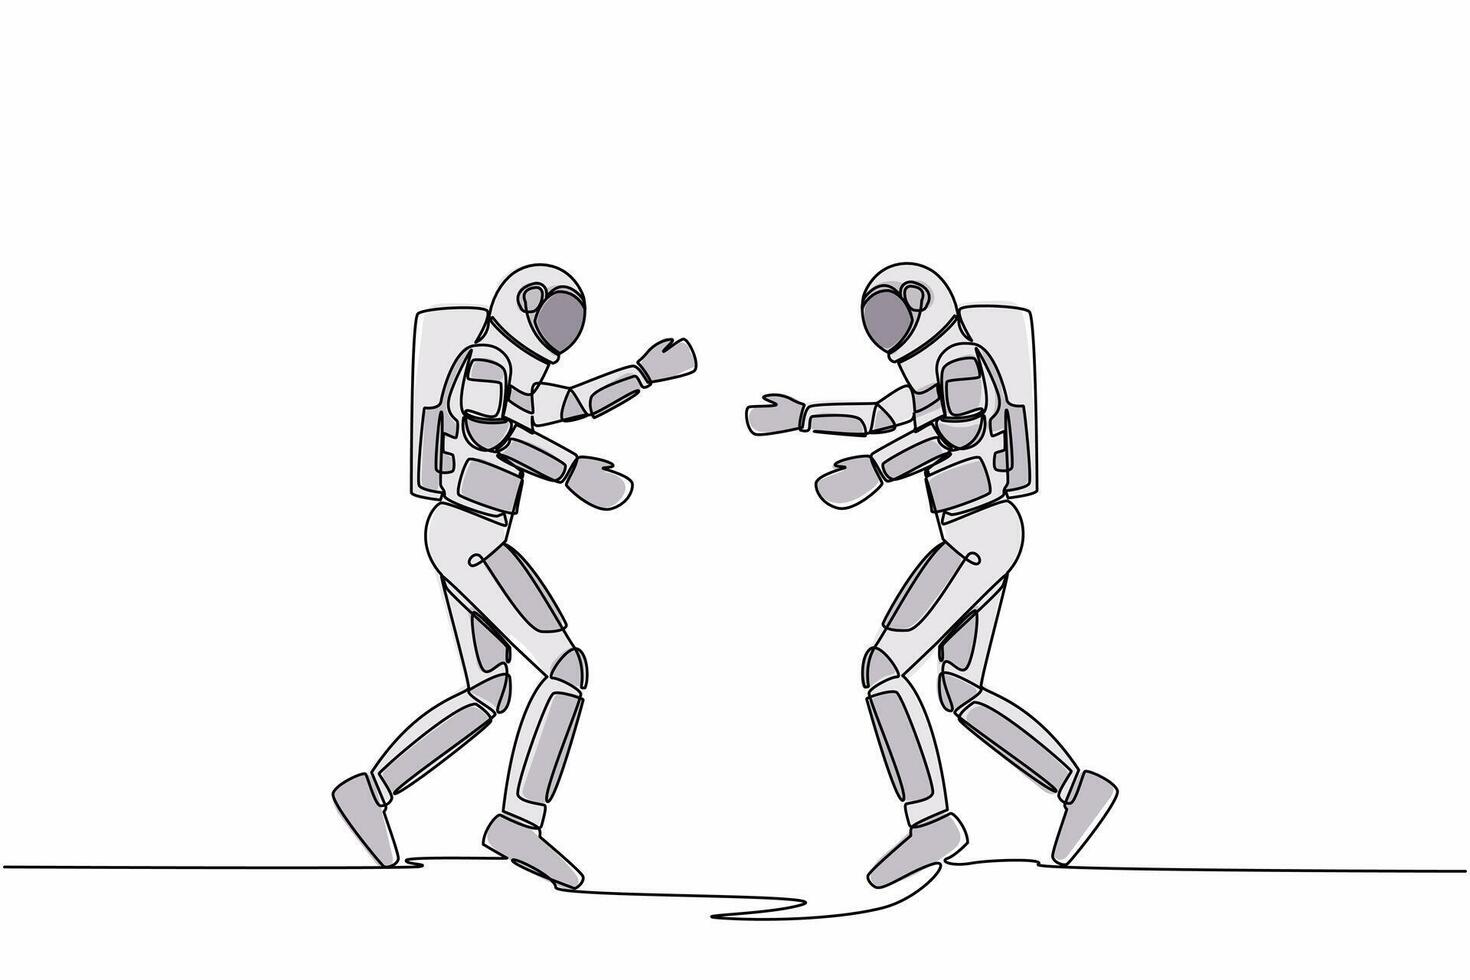 Single einer Linie Zeichnung zwei jung Astronaut Laufen Gesicht zu Gesicht während bekommen bereit zu Umarmung. brechen ein Glück zwischen zwei Freunde. kosmisch Galaxis Raum. kontinuierlich Linie zeichnen Design Vektor Illustration